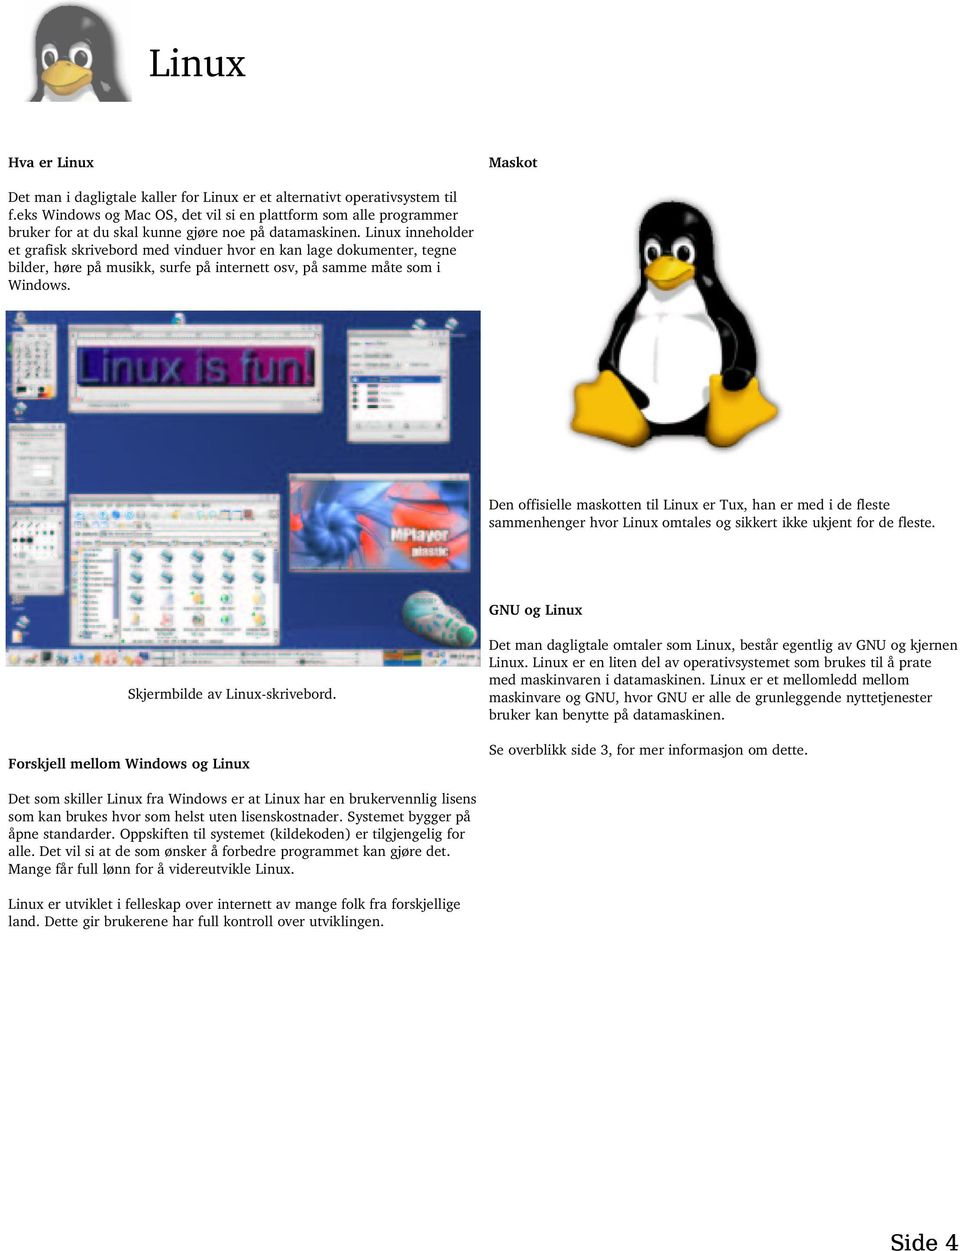 Linux inneholder et grafisk skrivebord med vinduer hvor en kan lage dokumenter, tegne bilder, høre på musikk, surfe på internett osv, på samme måte som i Windows.